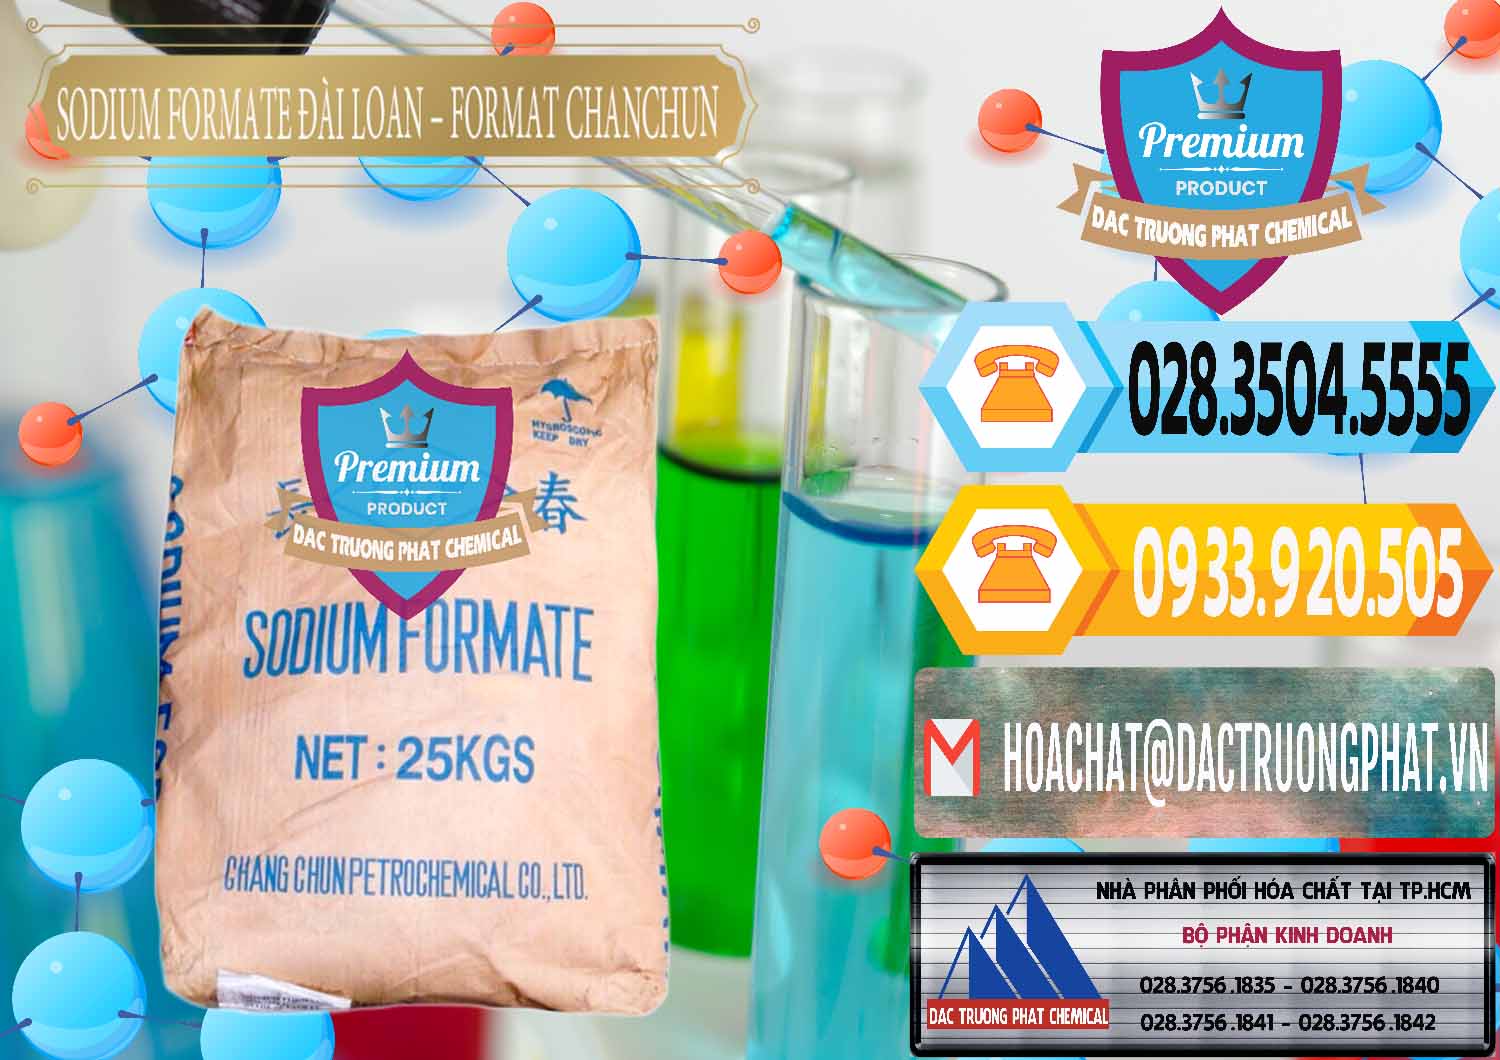 Đơn vị chuyên bán và cung ứng Sodium Formate - Natri Format Đài Loan Taiwan - 0141 - Chuyên cung cấp và nhập khẩu hóa chất tại TP.HCM - hoachattayrua.net